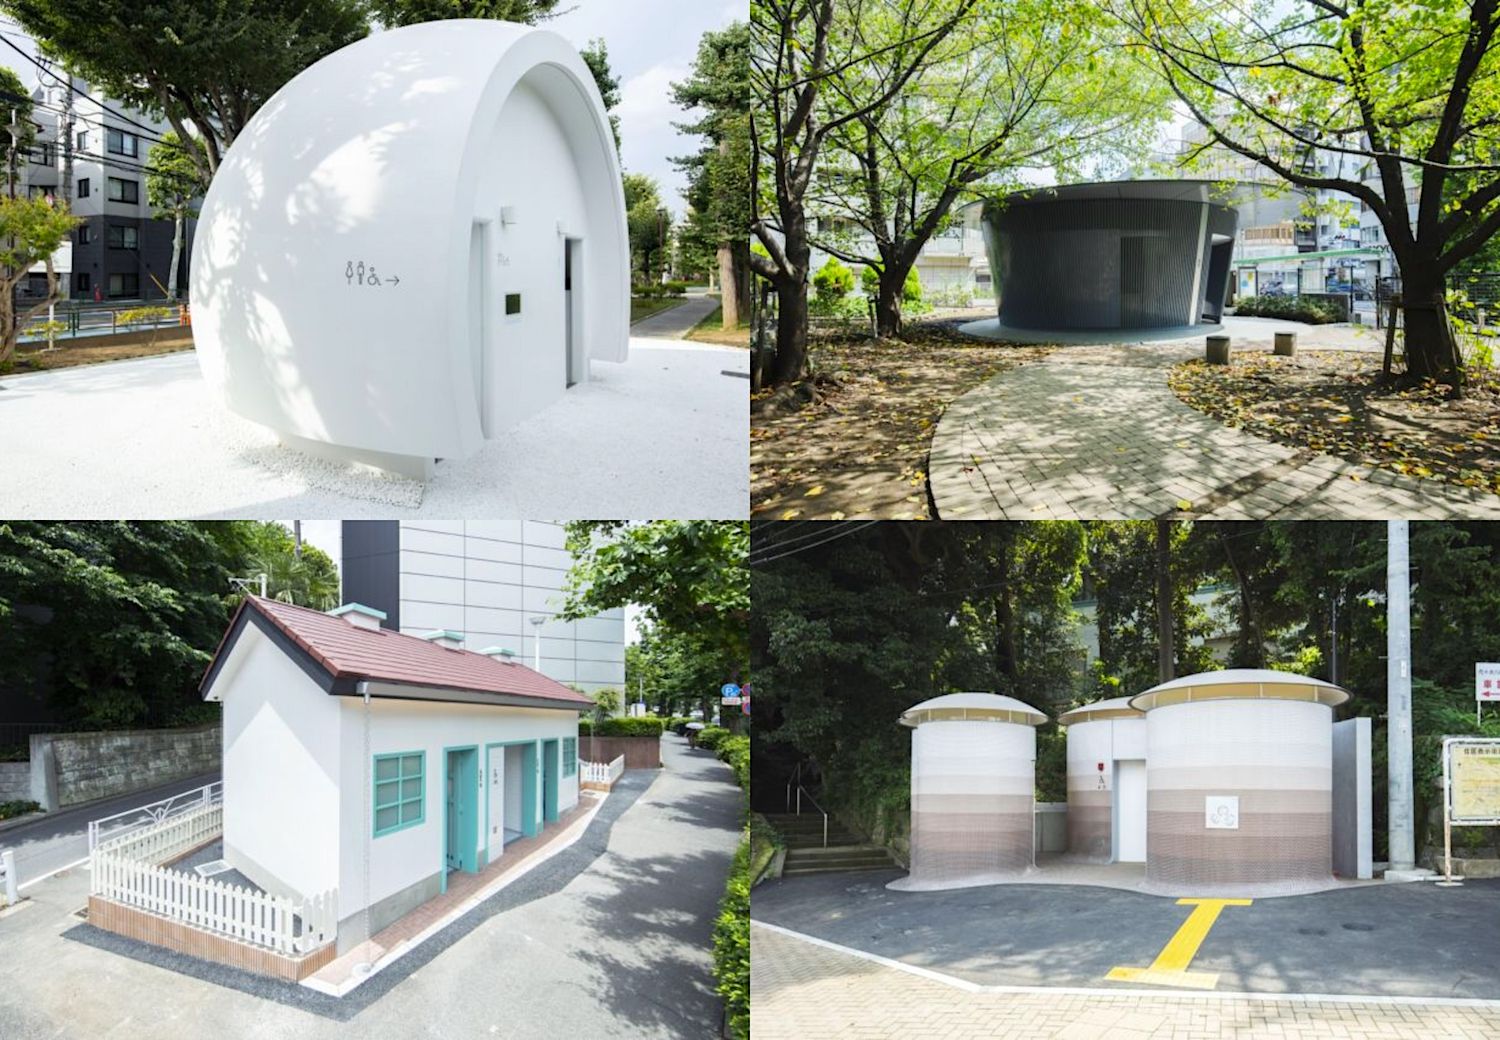 New public toilets in Tokyo